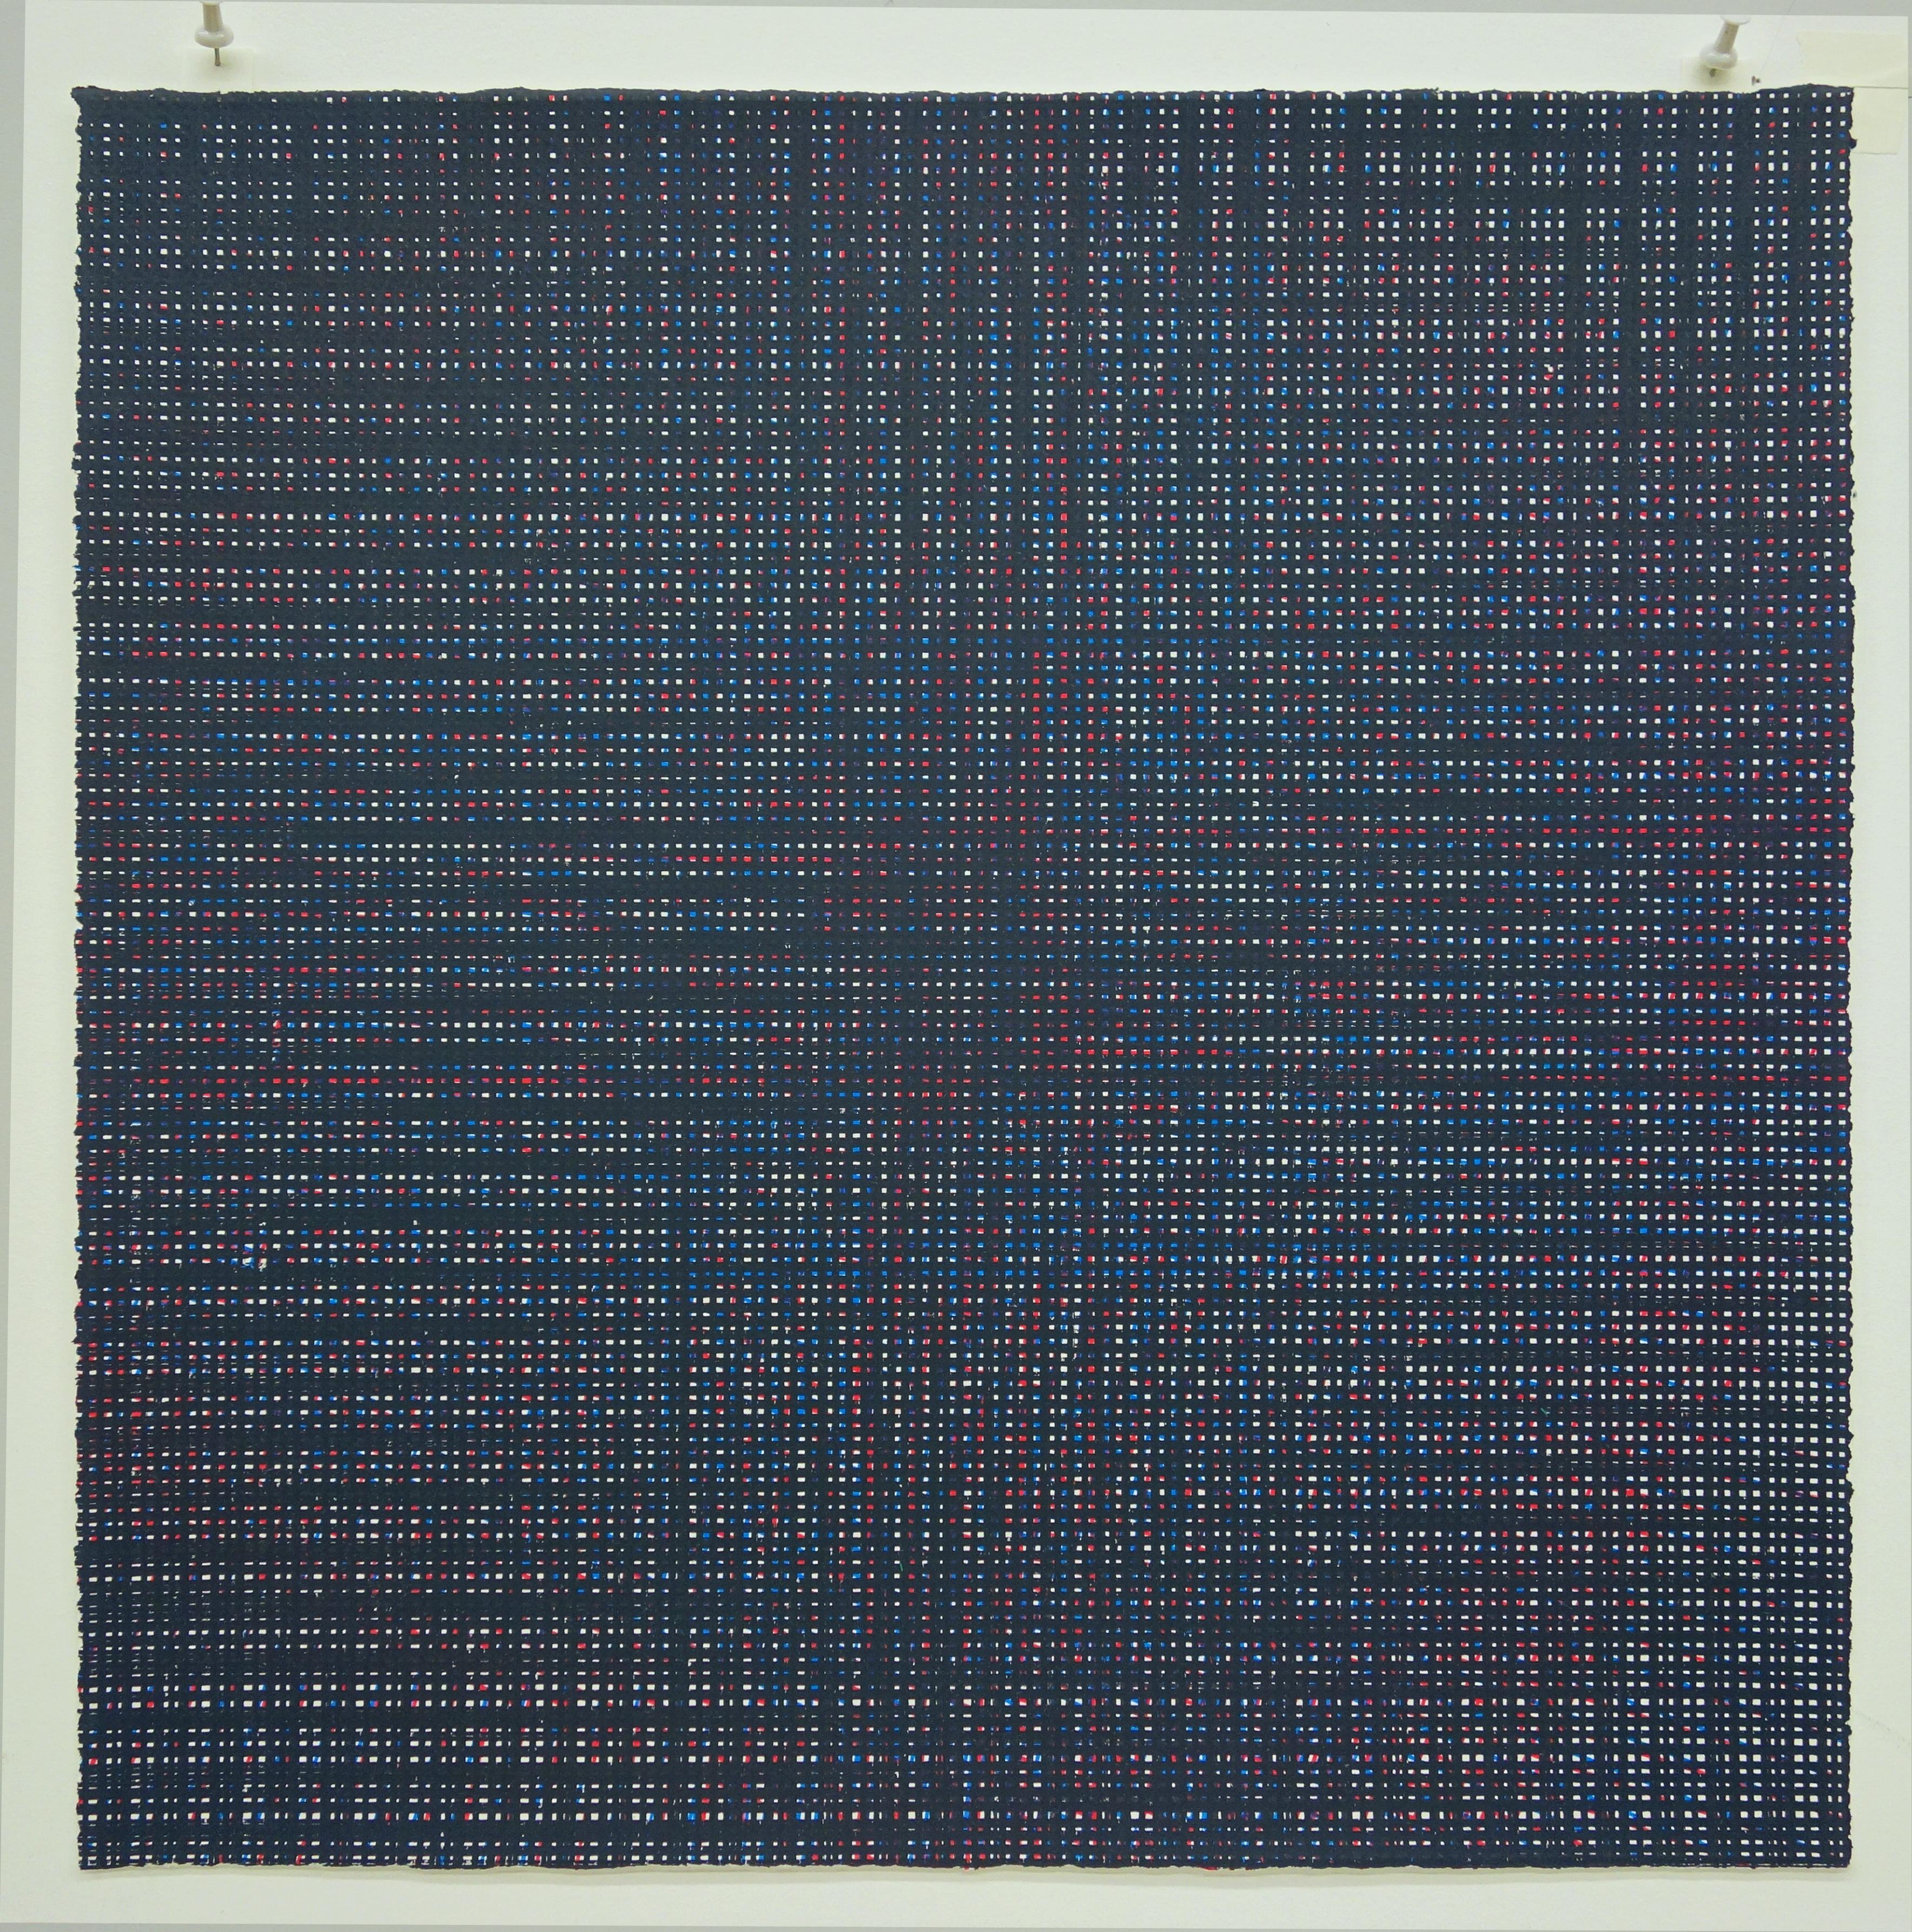 Rob de Oude, Untitled-Wassaic 6, 2016, silkscreen, 18 x 18, Minimalist 5